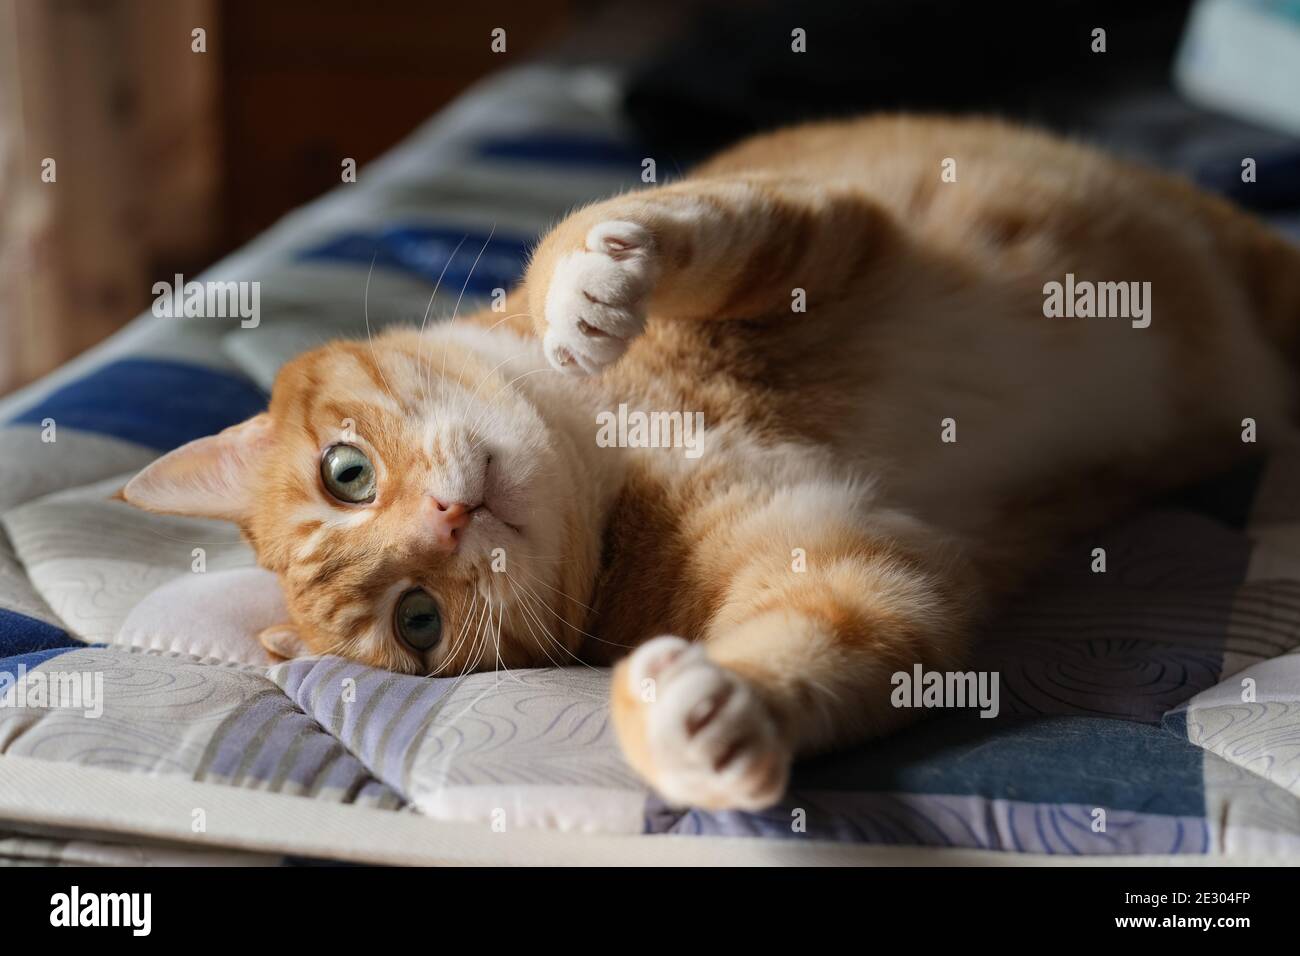 gros plan sur un chat tabby joueur allongé sur un matelas, regardant l'appareil photo et la patte d'étirement Banque D'Images